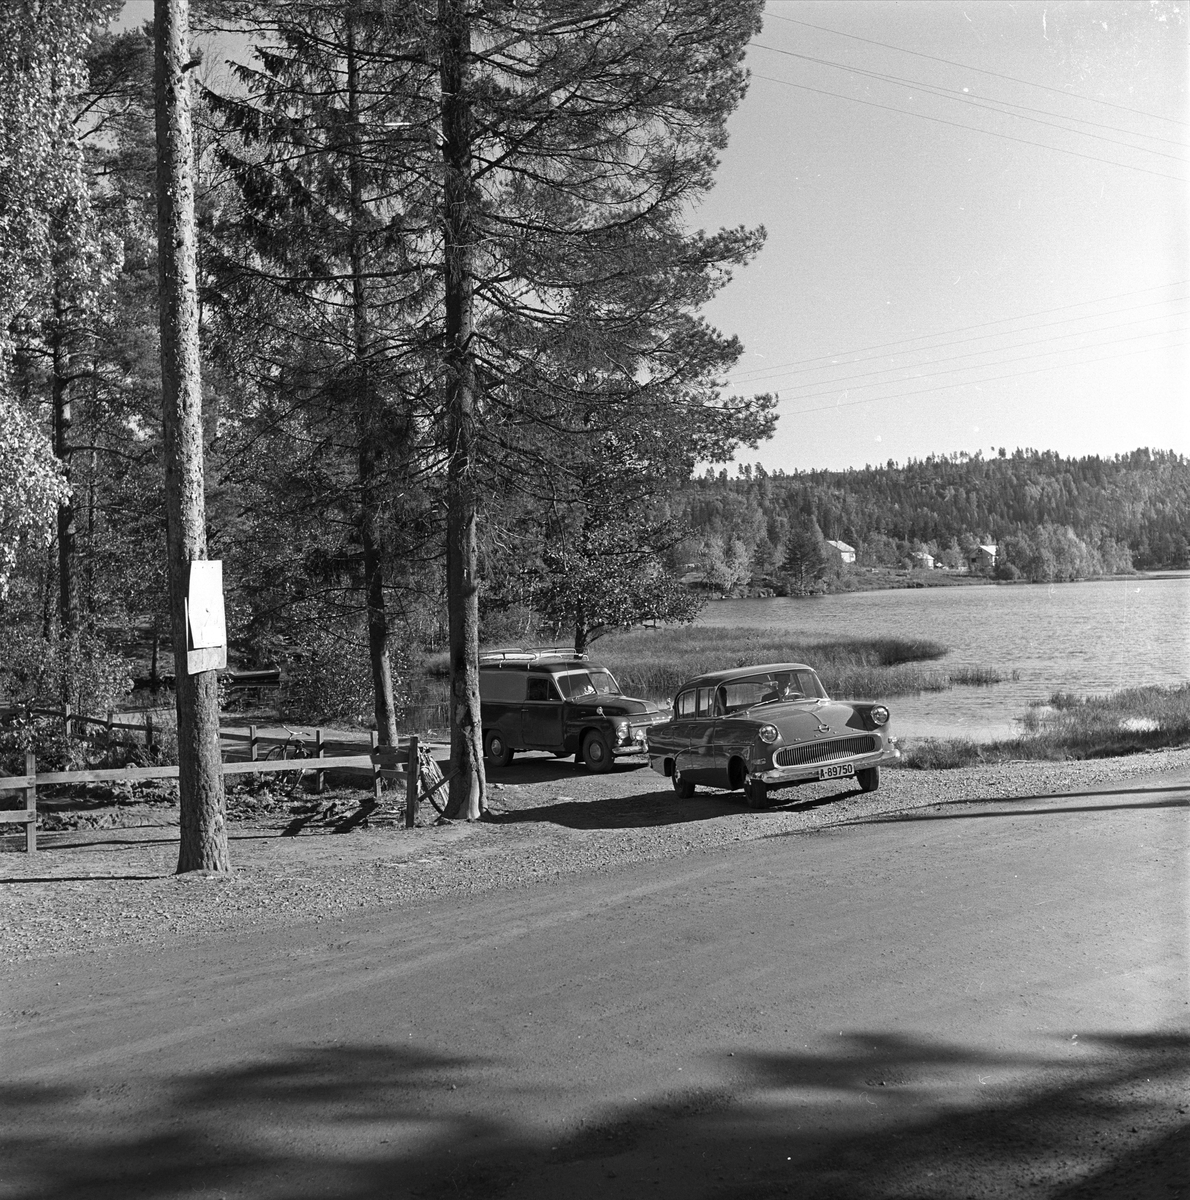 Vangen, Enebakk, Akershus, 01.10.1960. Skiforeningens sportshytte. Landskap med biler

